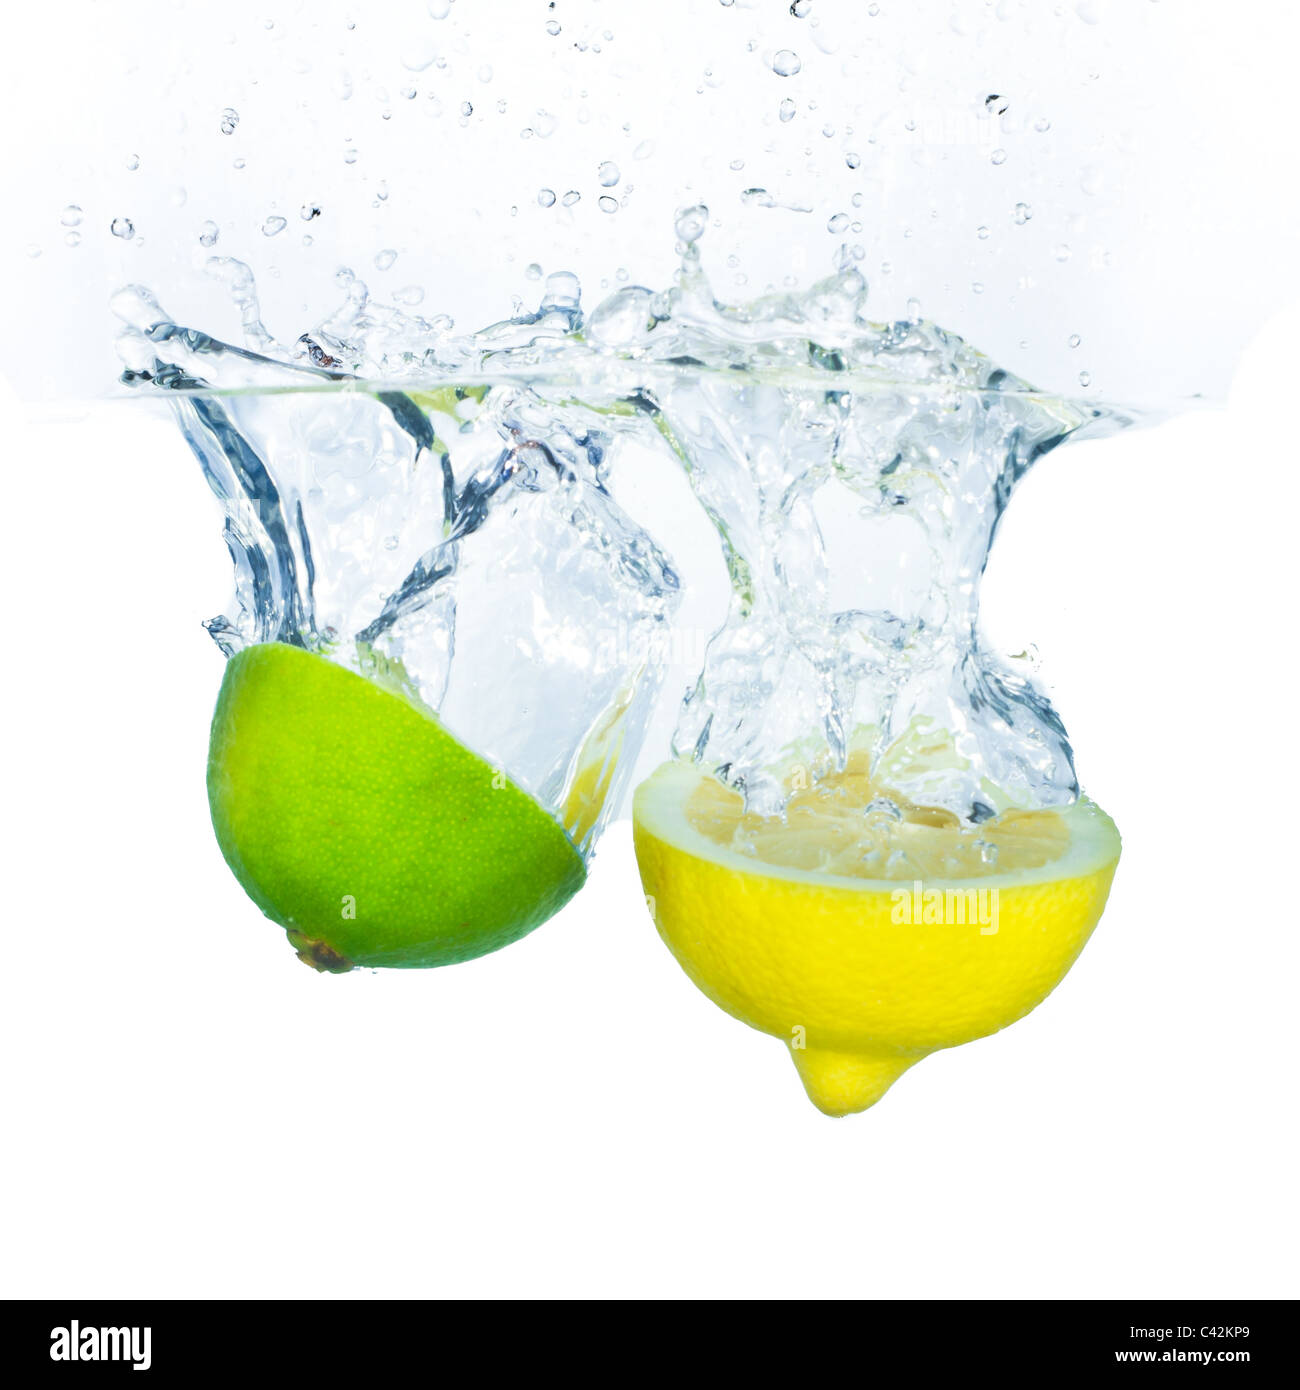 lime and lemon splashing water isolated on white background Stock Photo